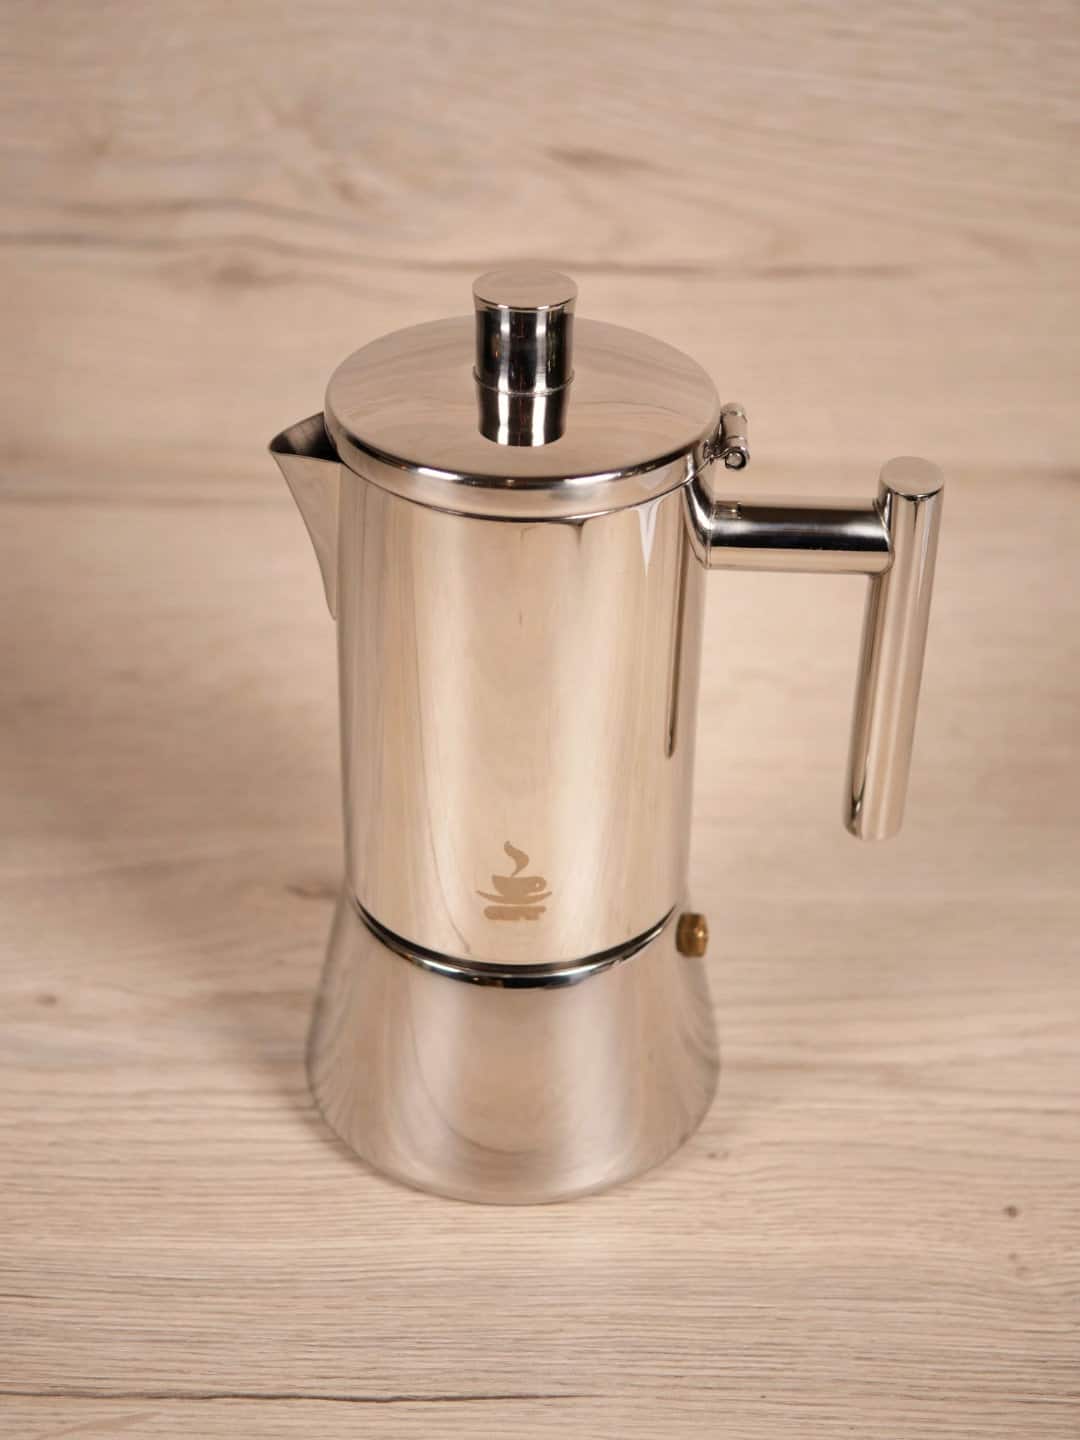 Espressokocher 6 Tassen - Nando - Silber - Kaffeezubereiter - Gefu